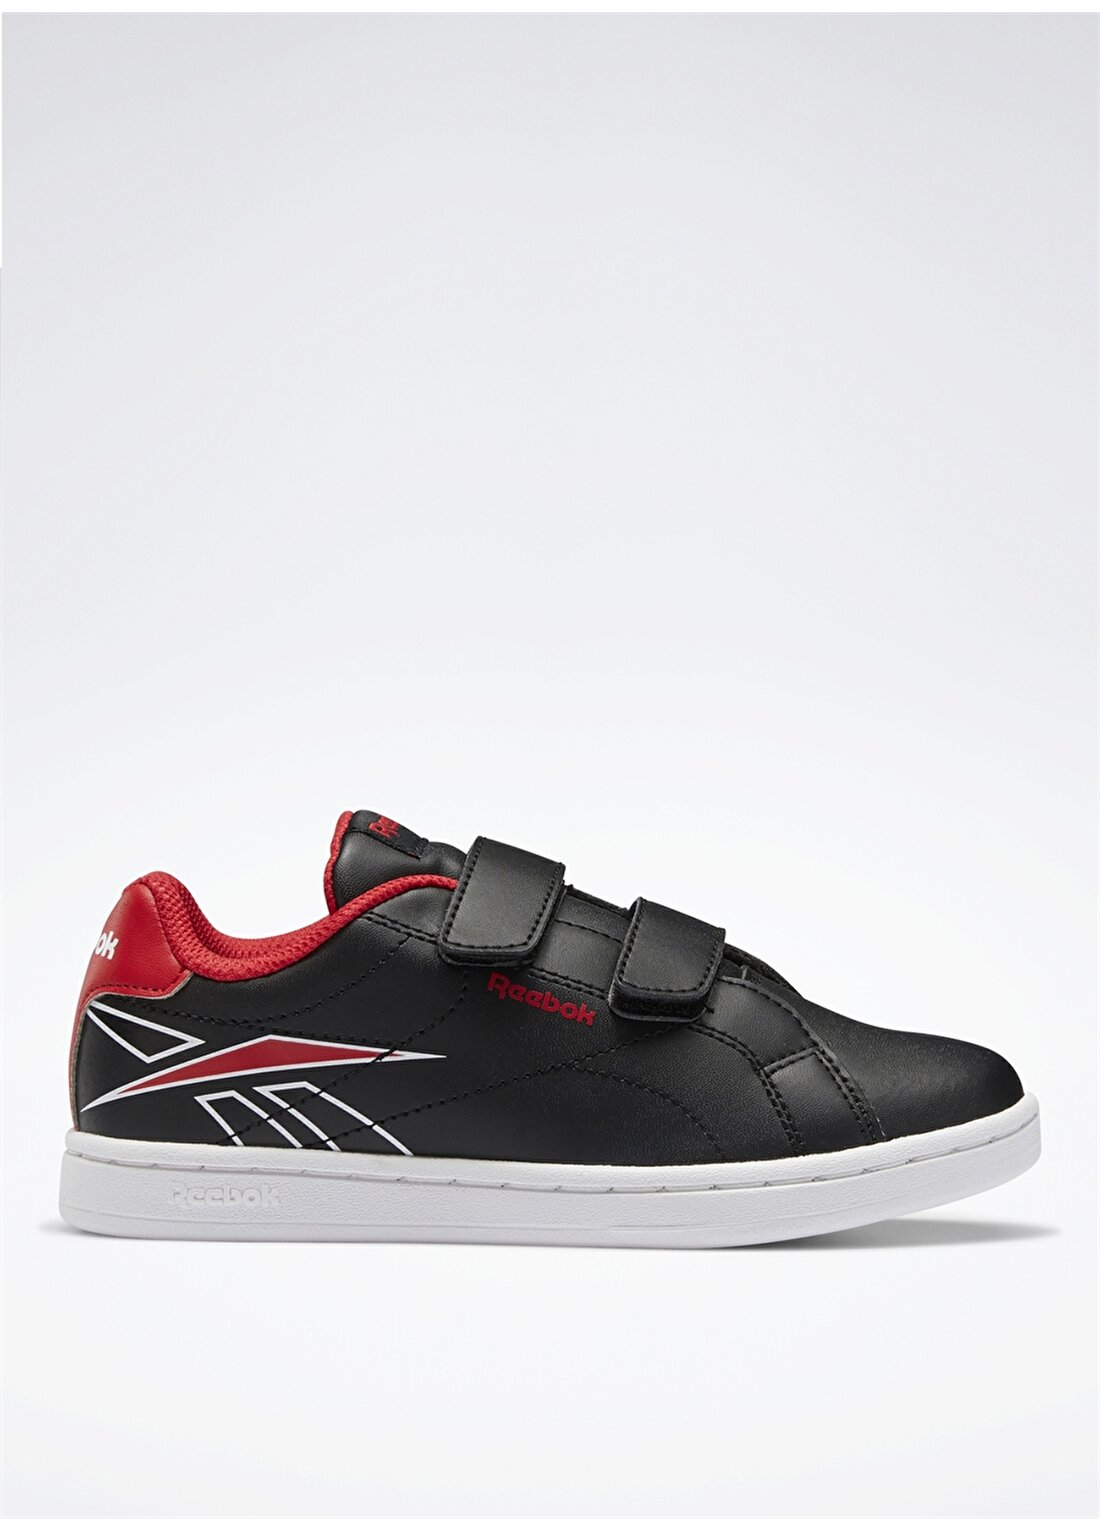 Reebok Siyah - Beyaz - Kırmızı Erkek Çocuk Yürüyüş Ayakkabısı